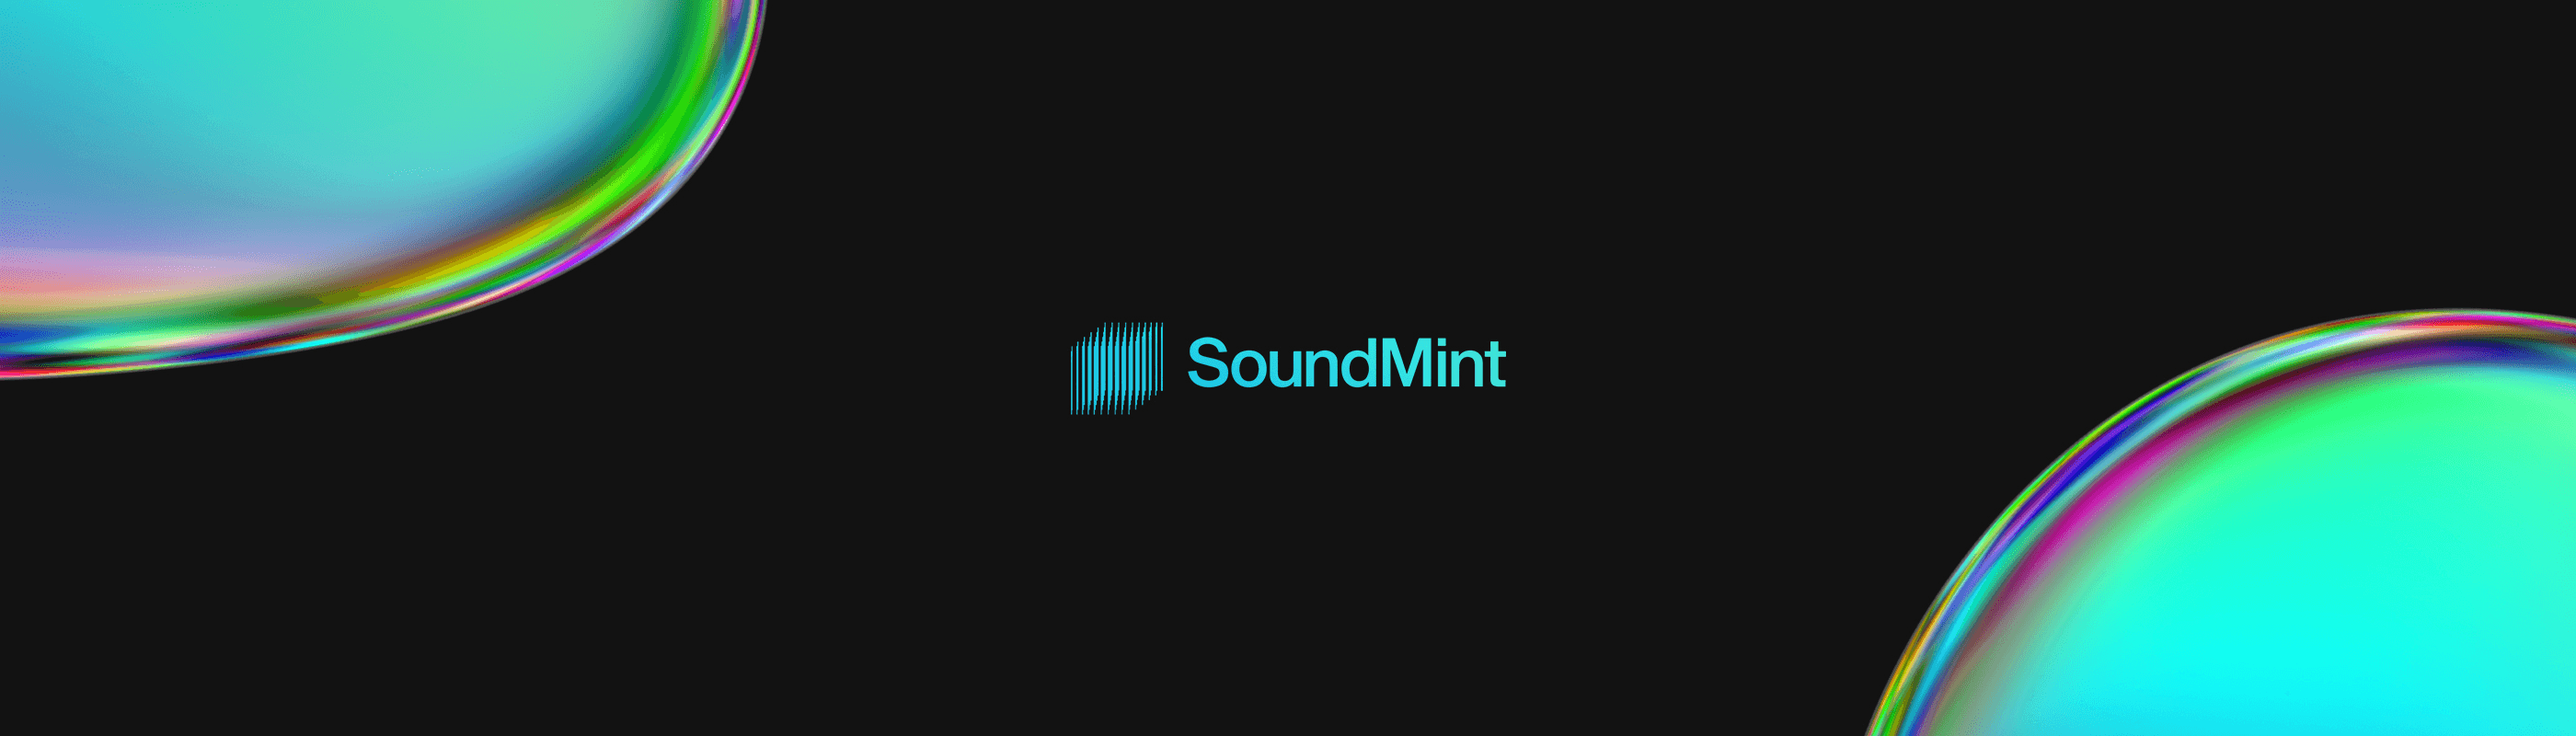 SoundMint バナー